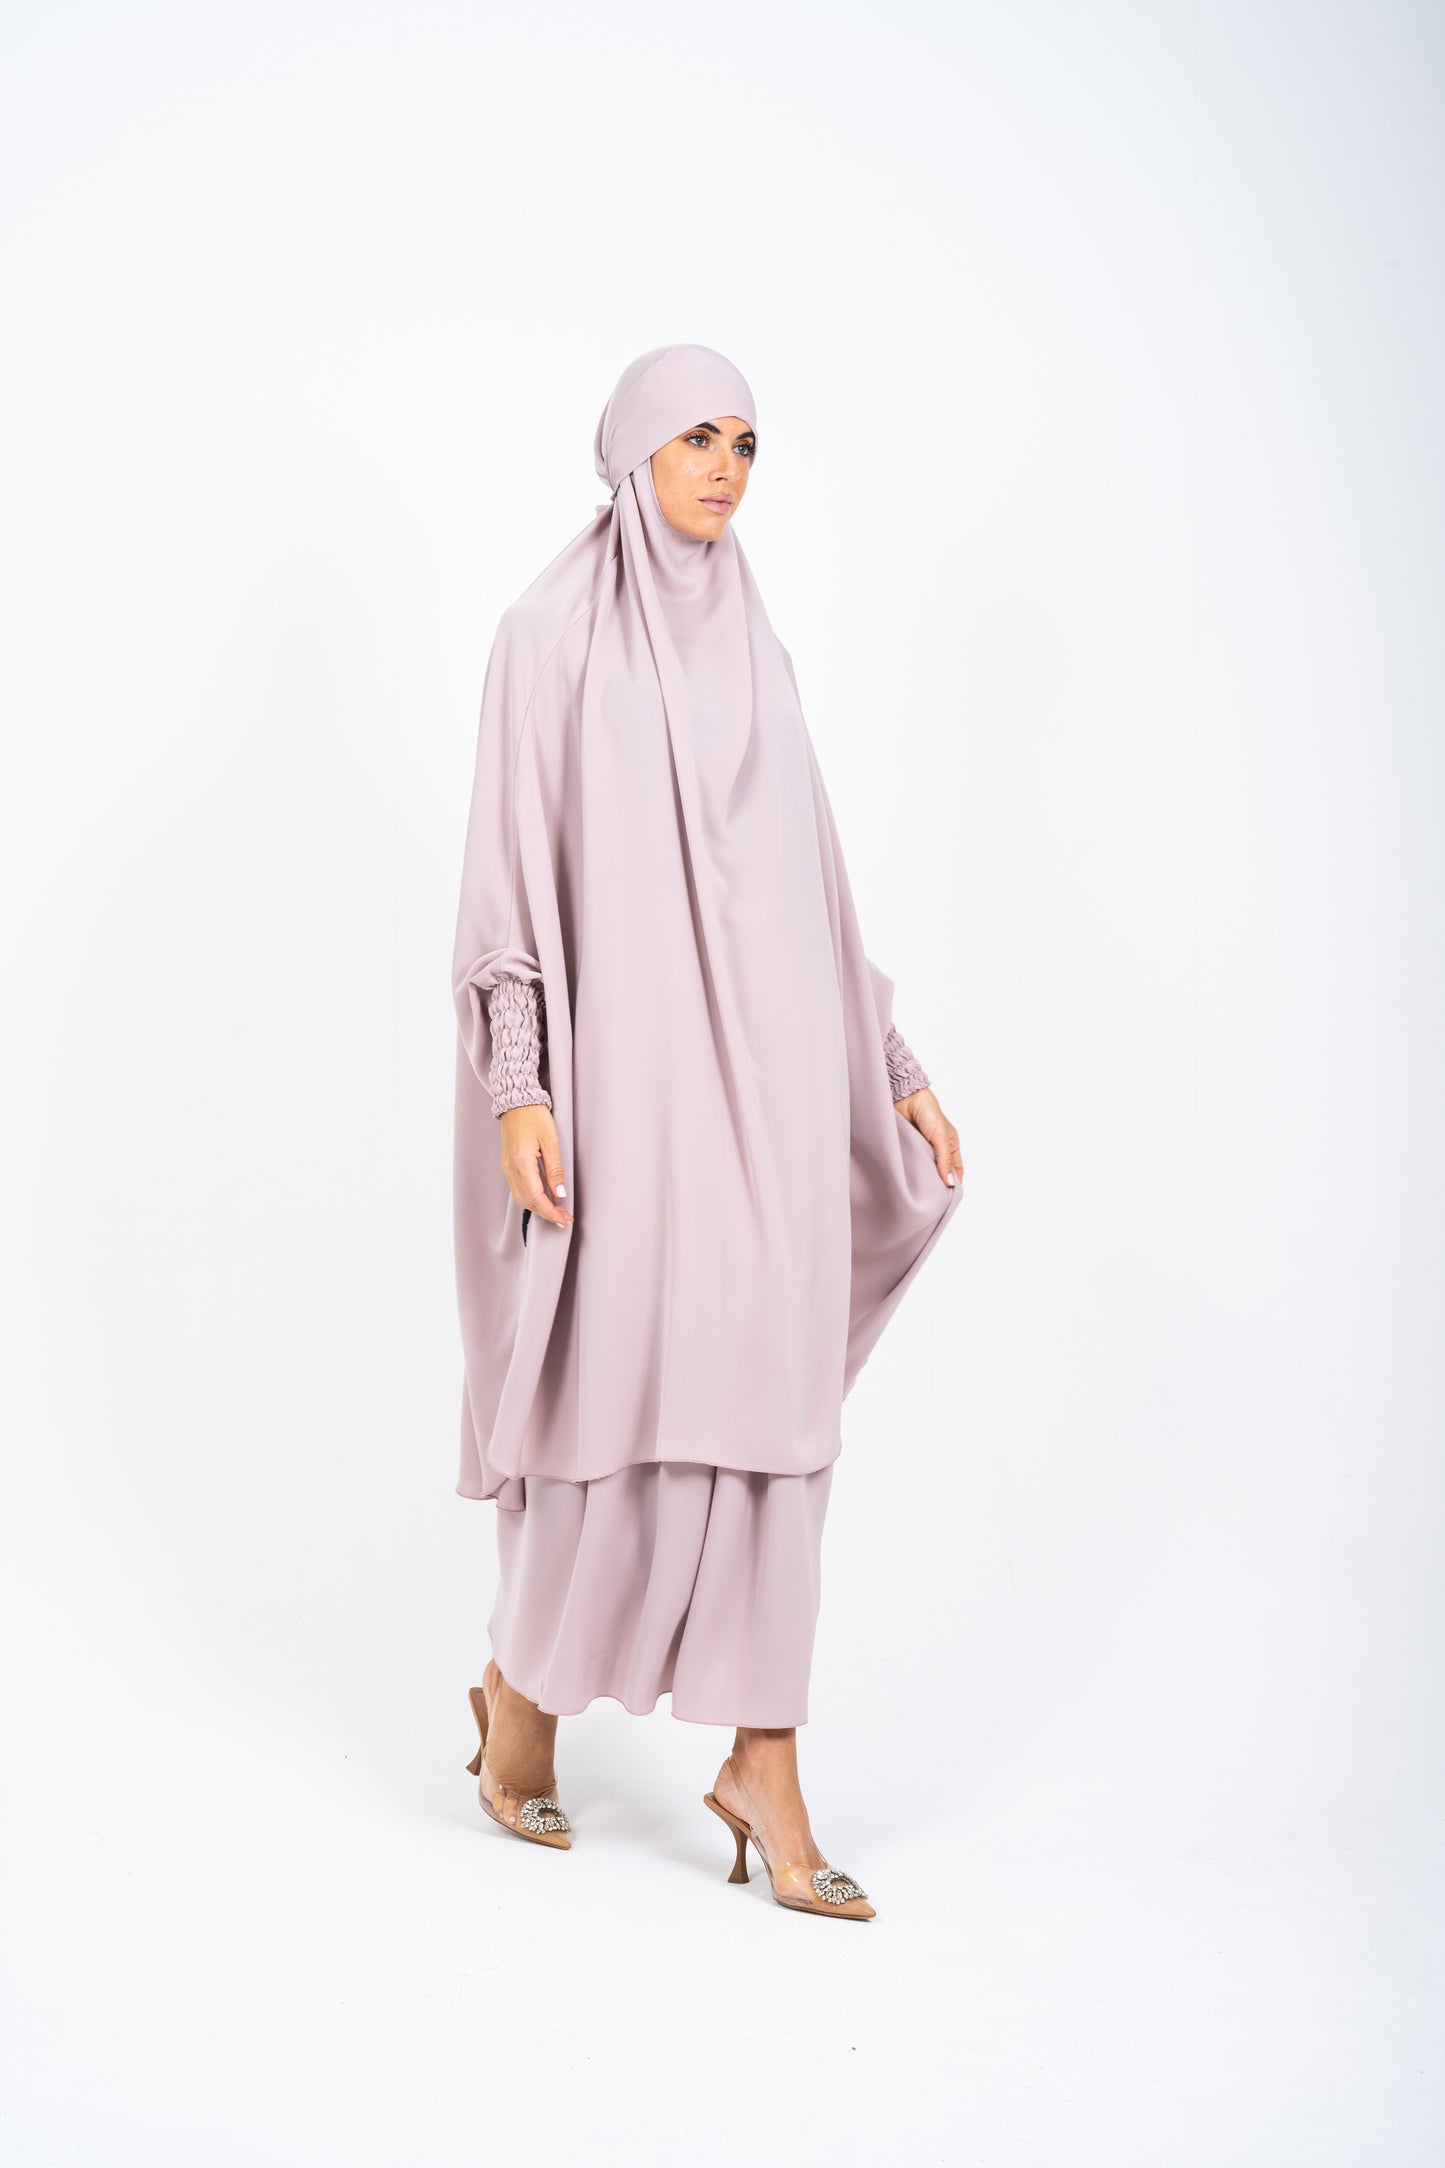 Jilbab with Skirt